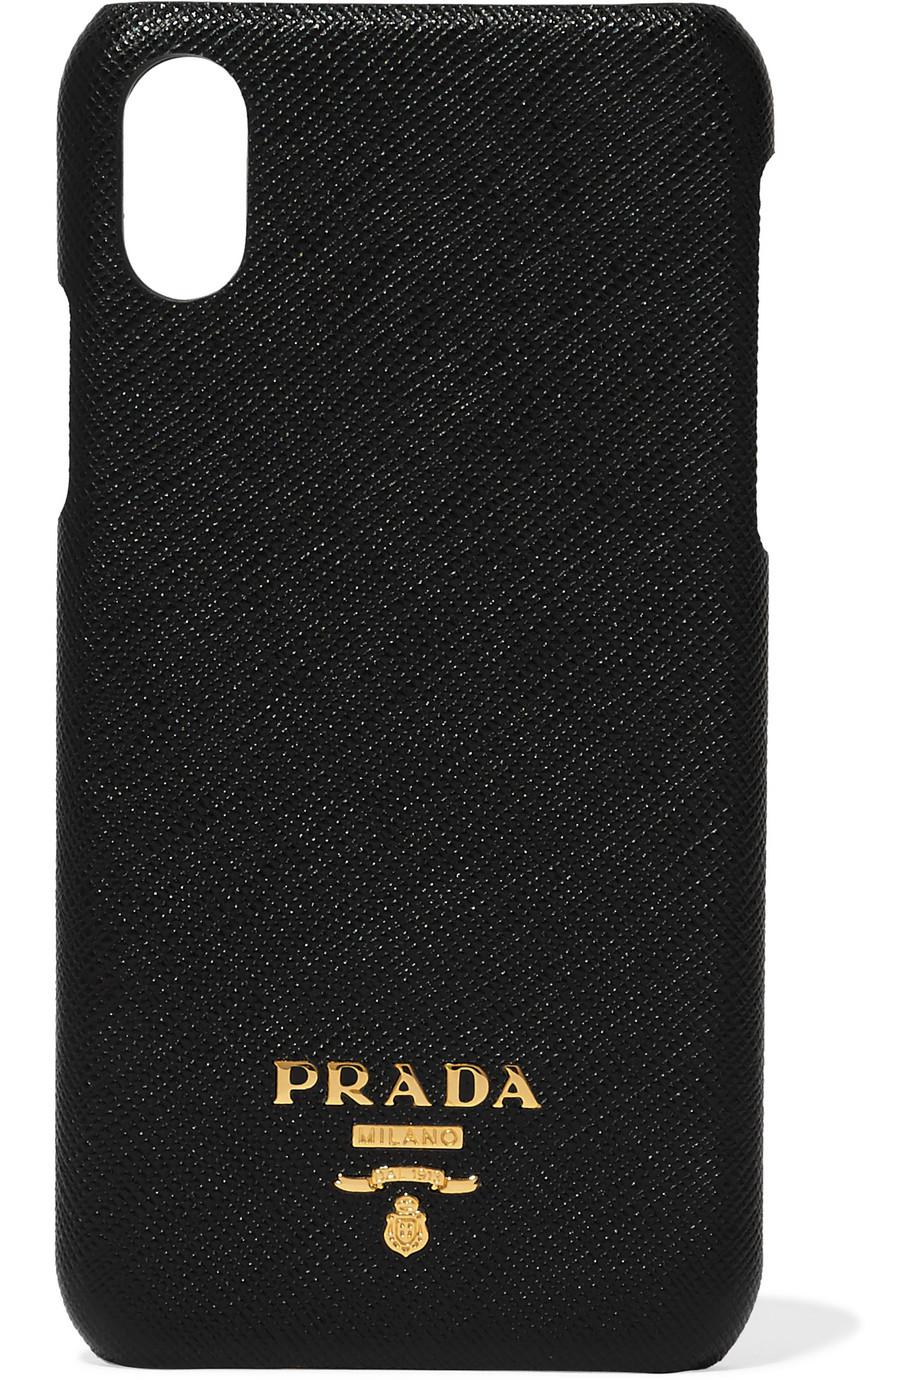 prada phone case iphone x